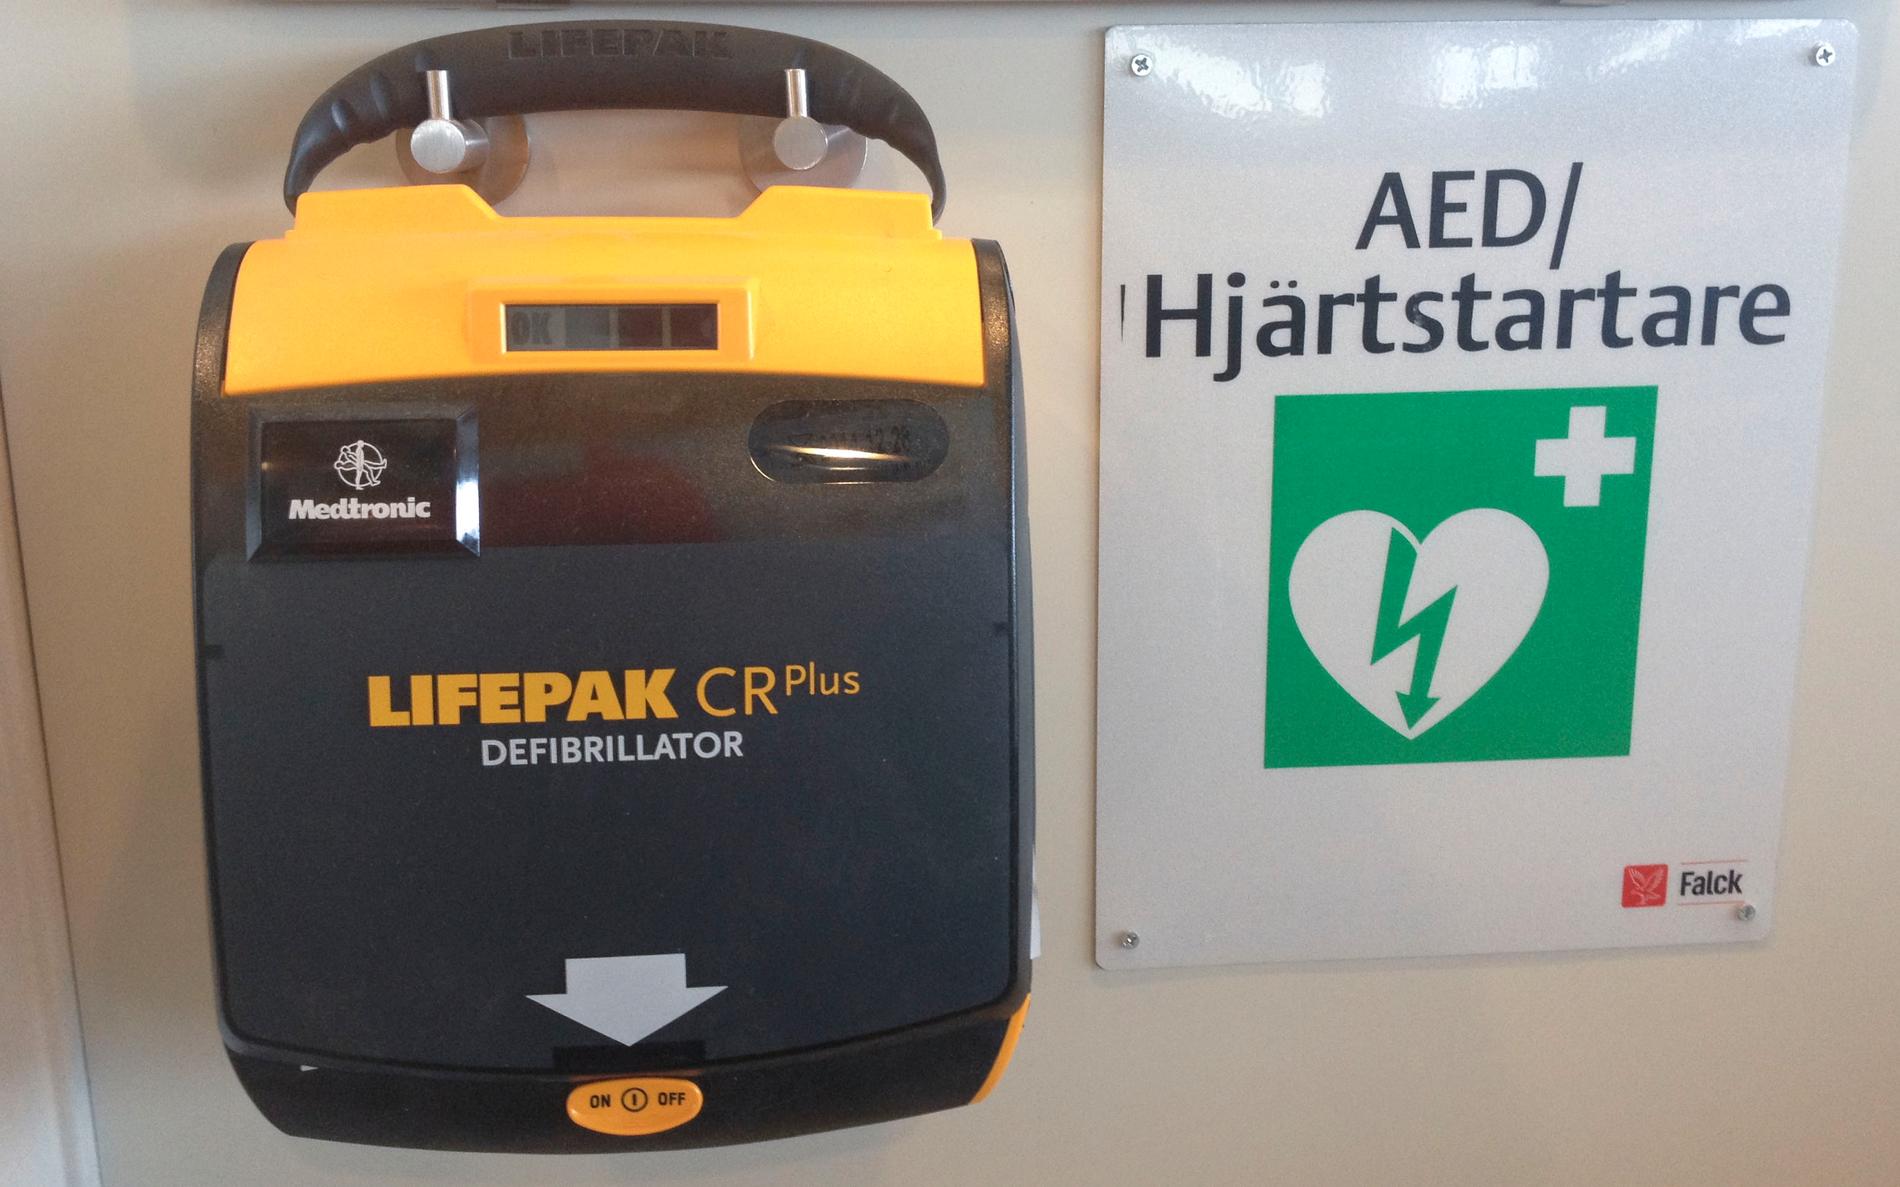 Defibrillator på en arbetsplats. Arkivbild.